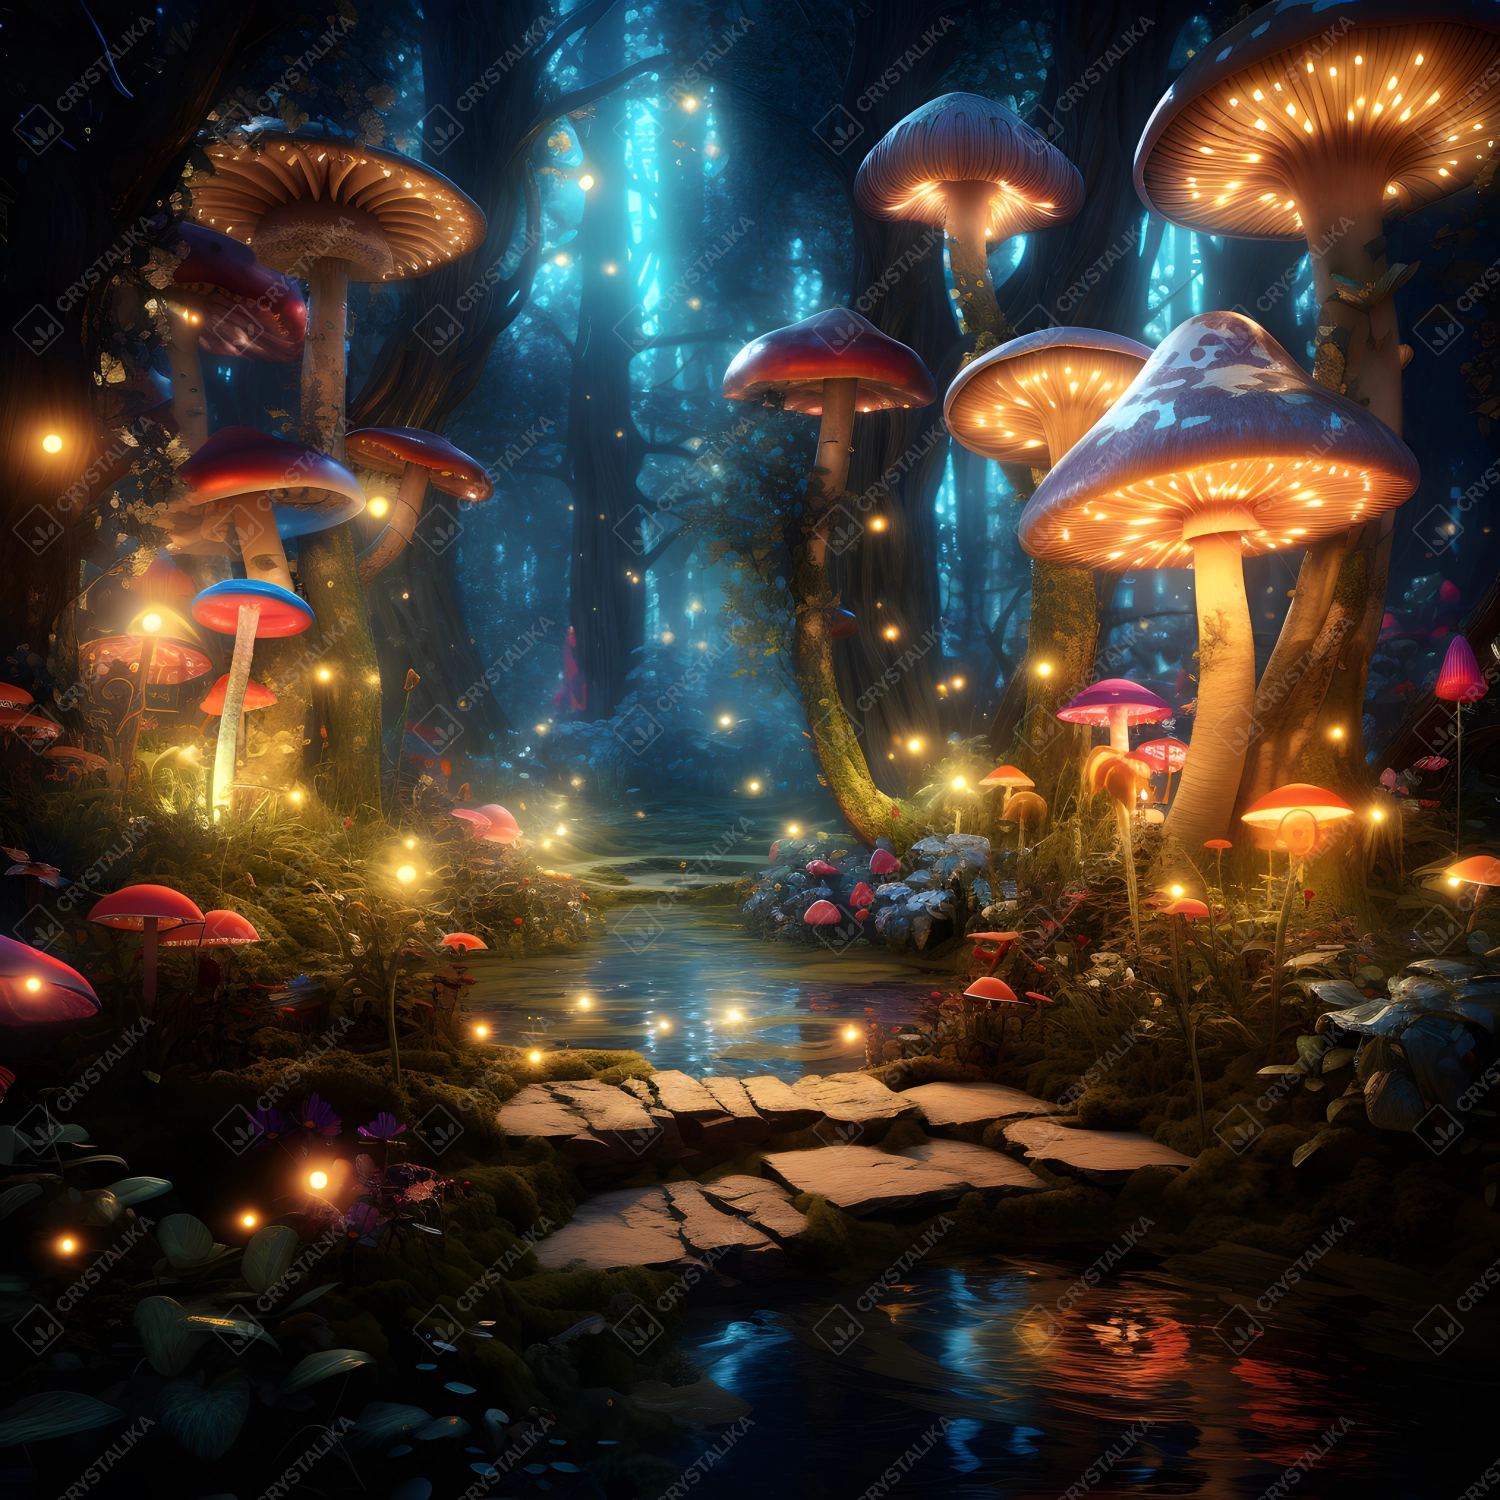 Magical Shimmering Mushroom Garden